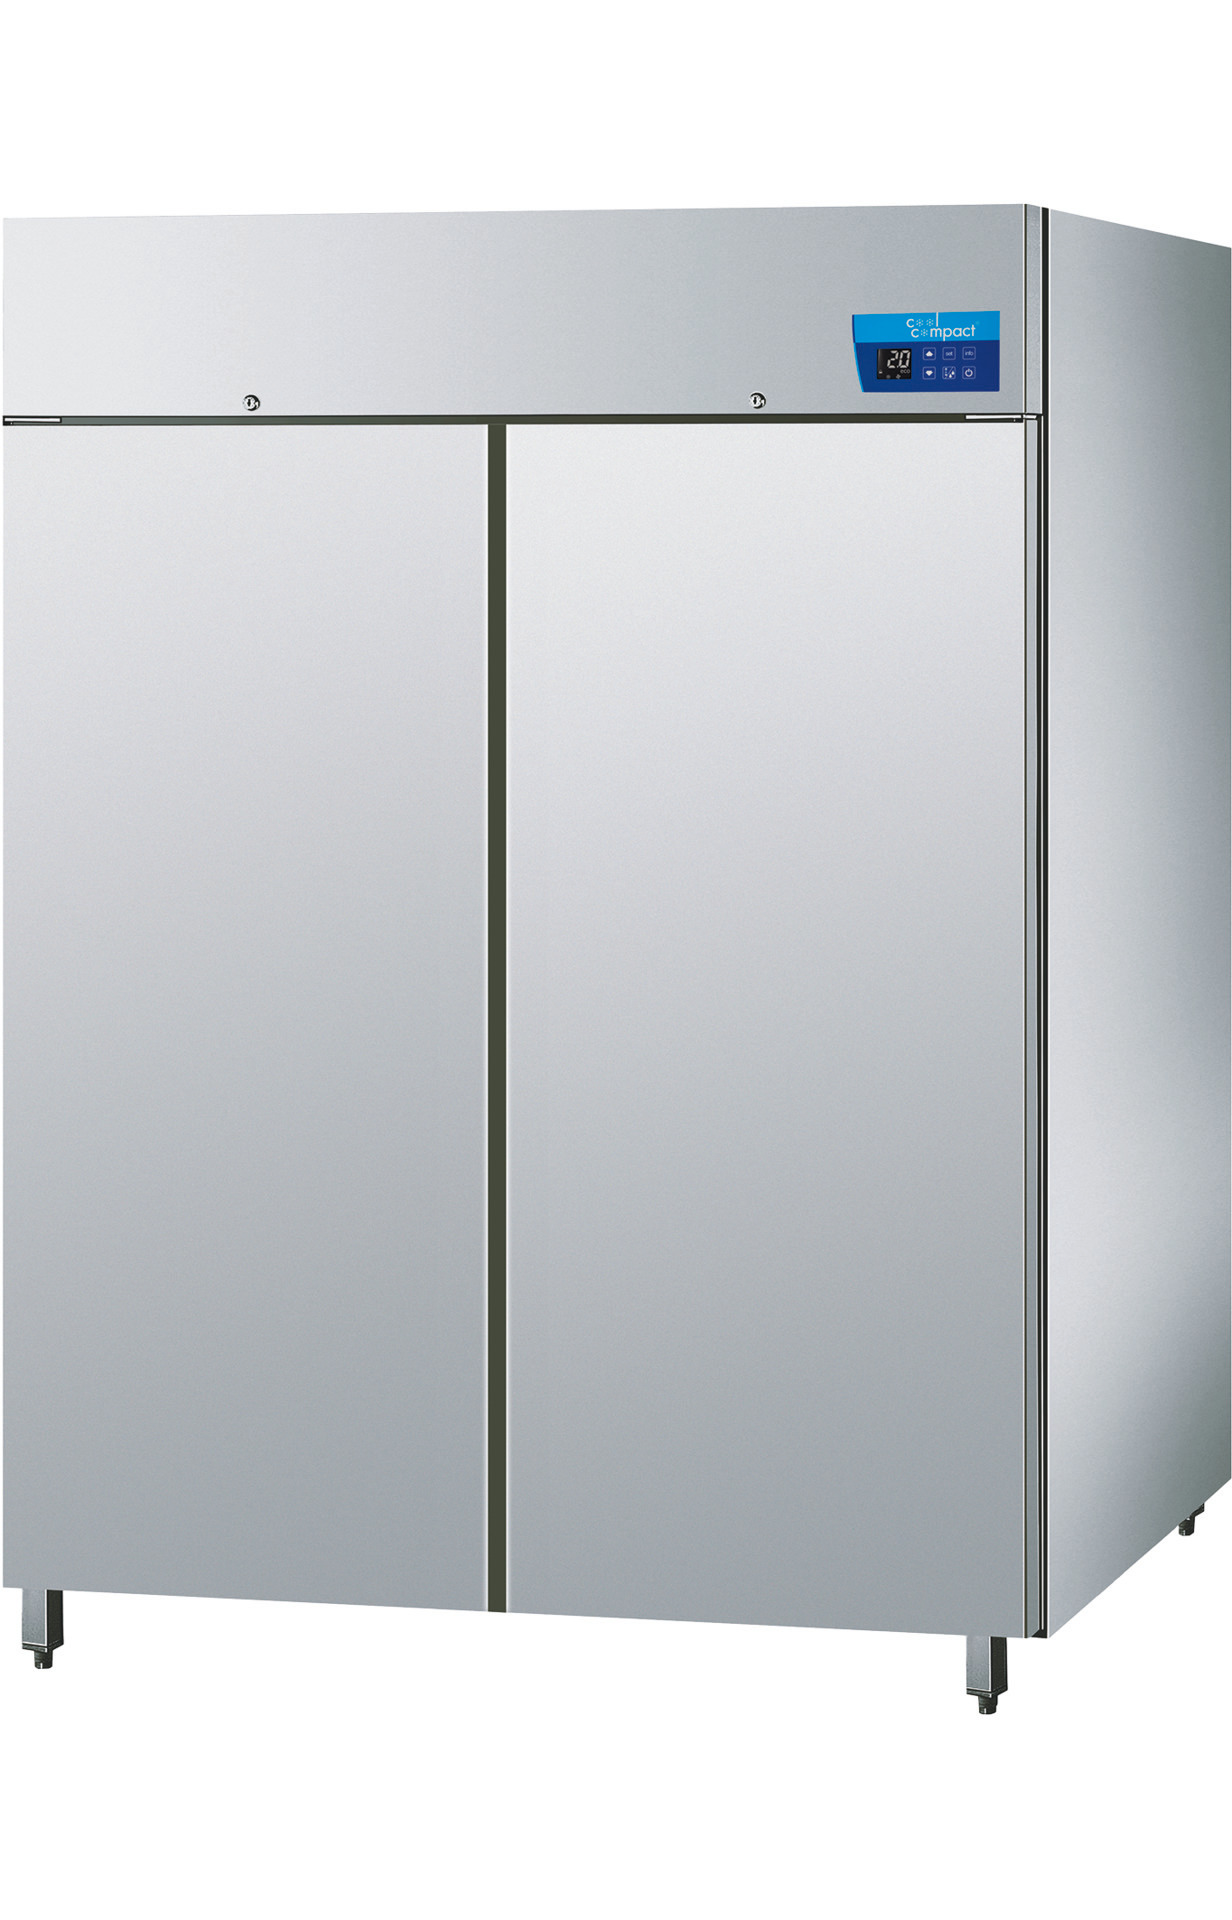 Umluft-Tiefkühlschrank mit 2 Türen  je 22 x GN 2/1 / zentralgekühlt